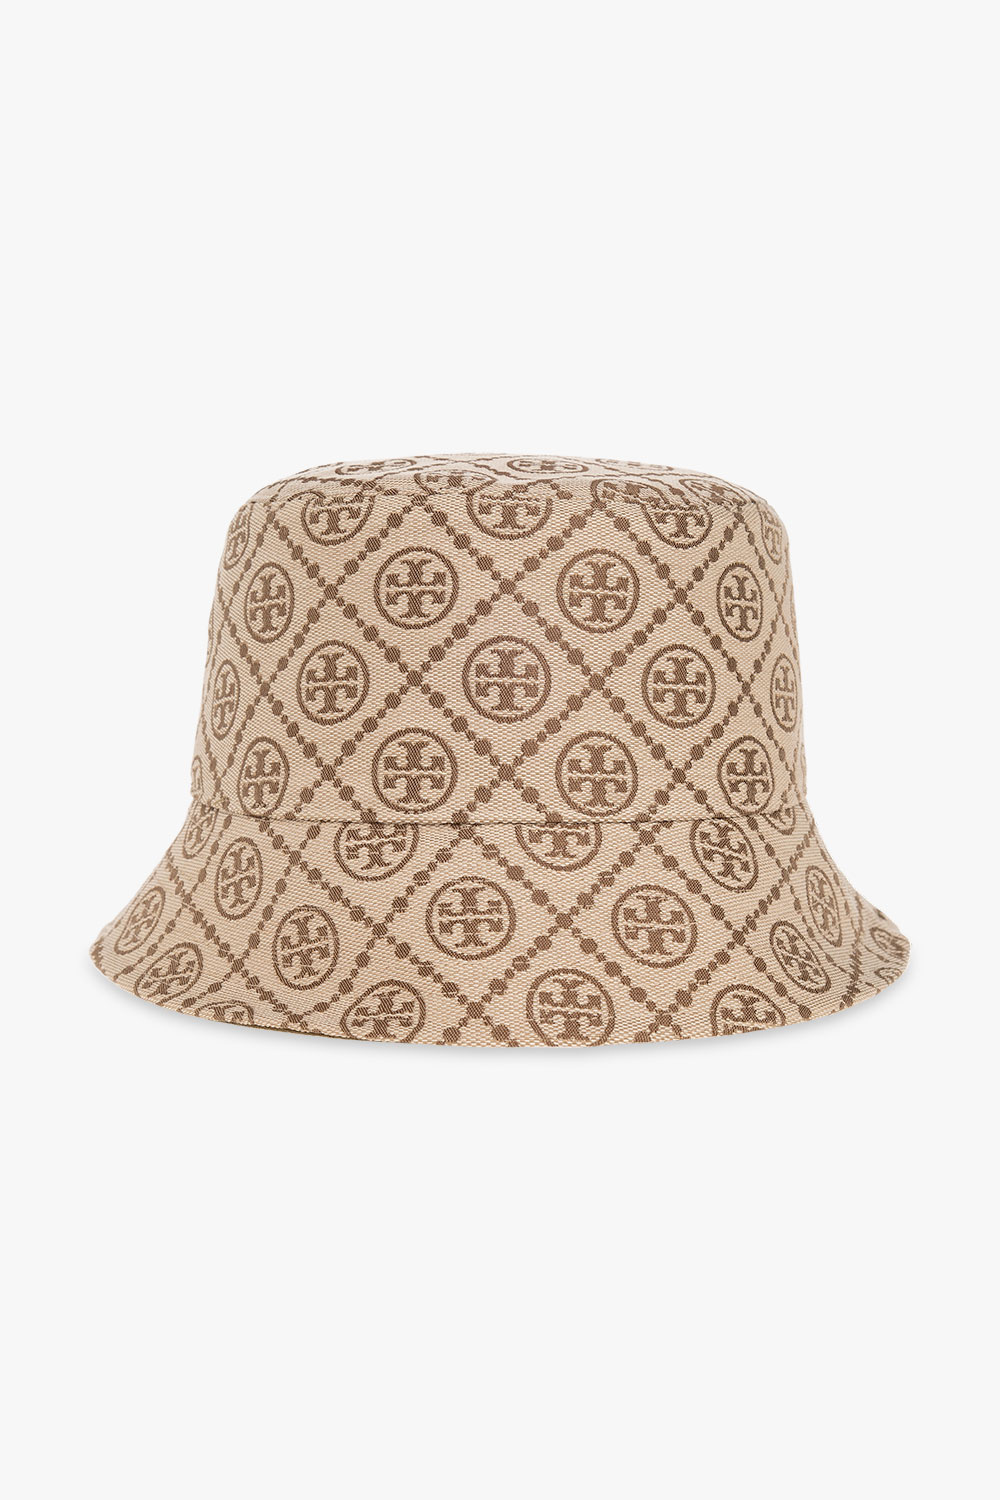 Women's streetwear outfit, Fendi bucket hat